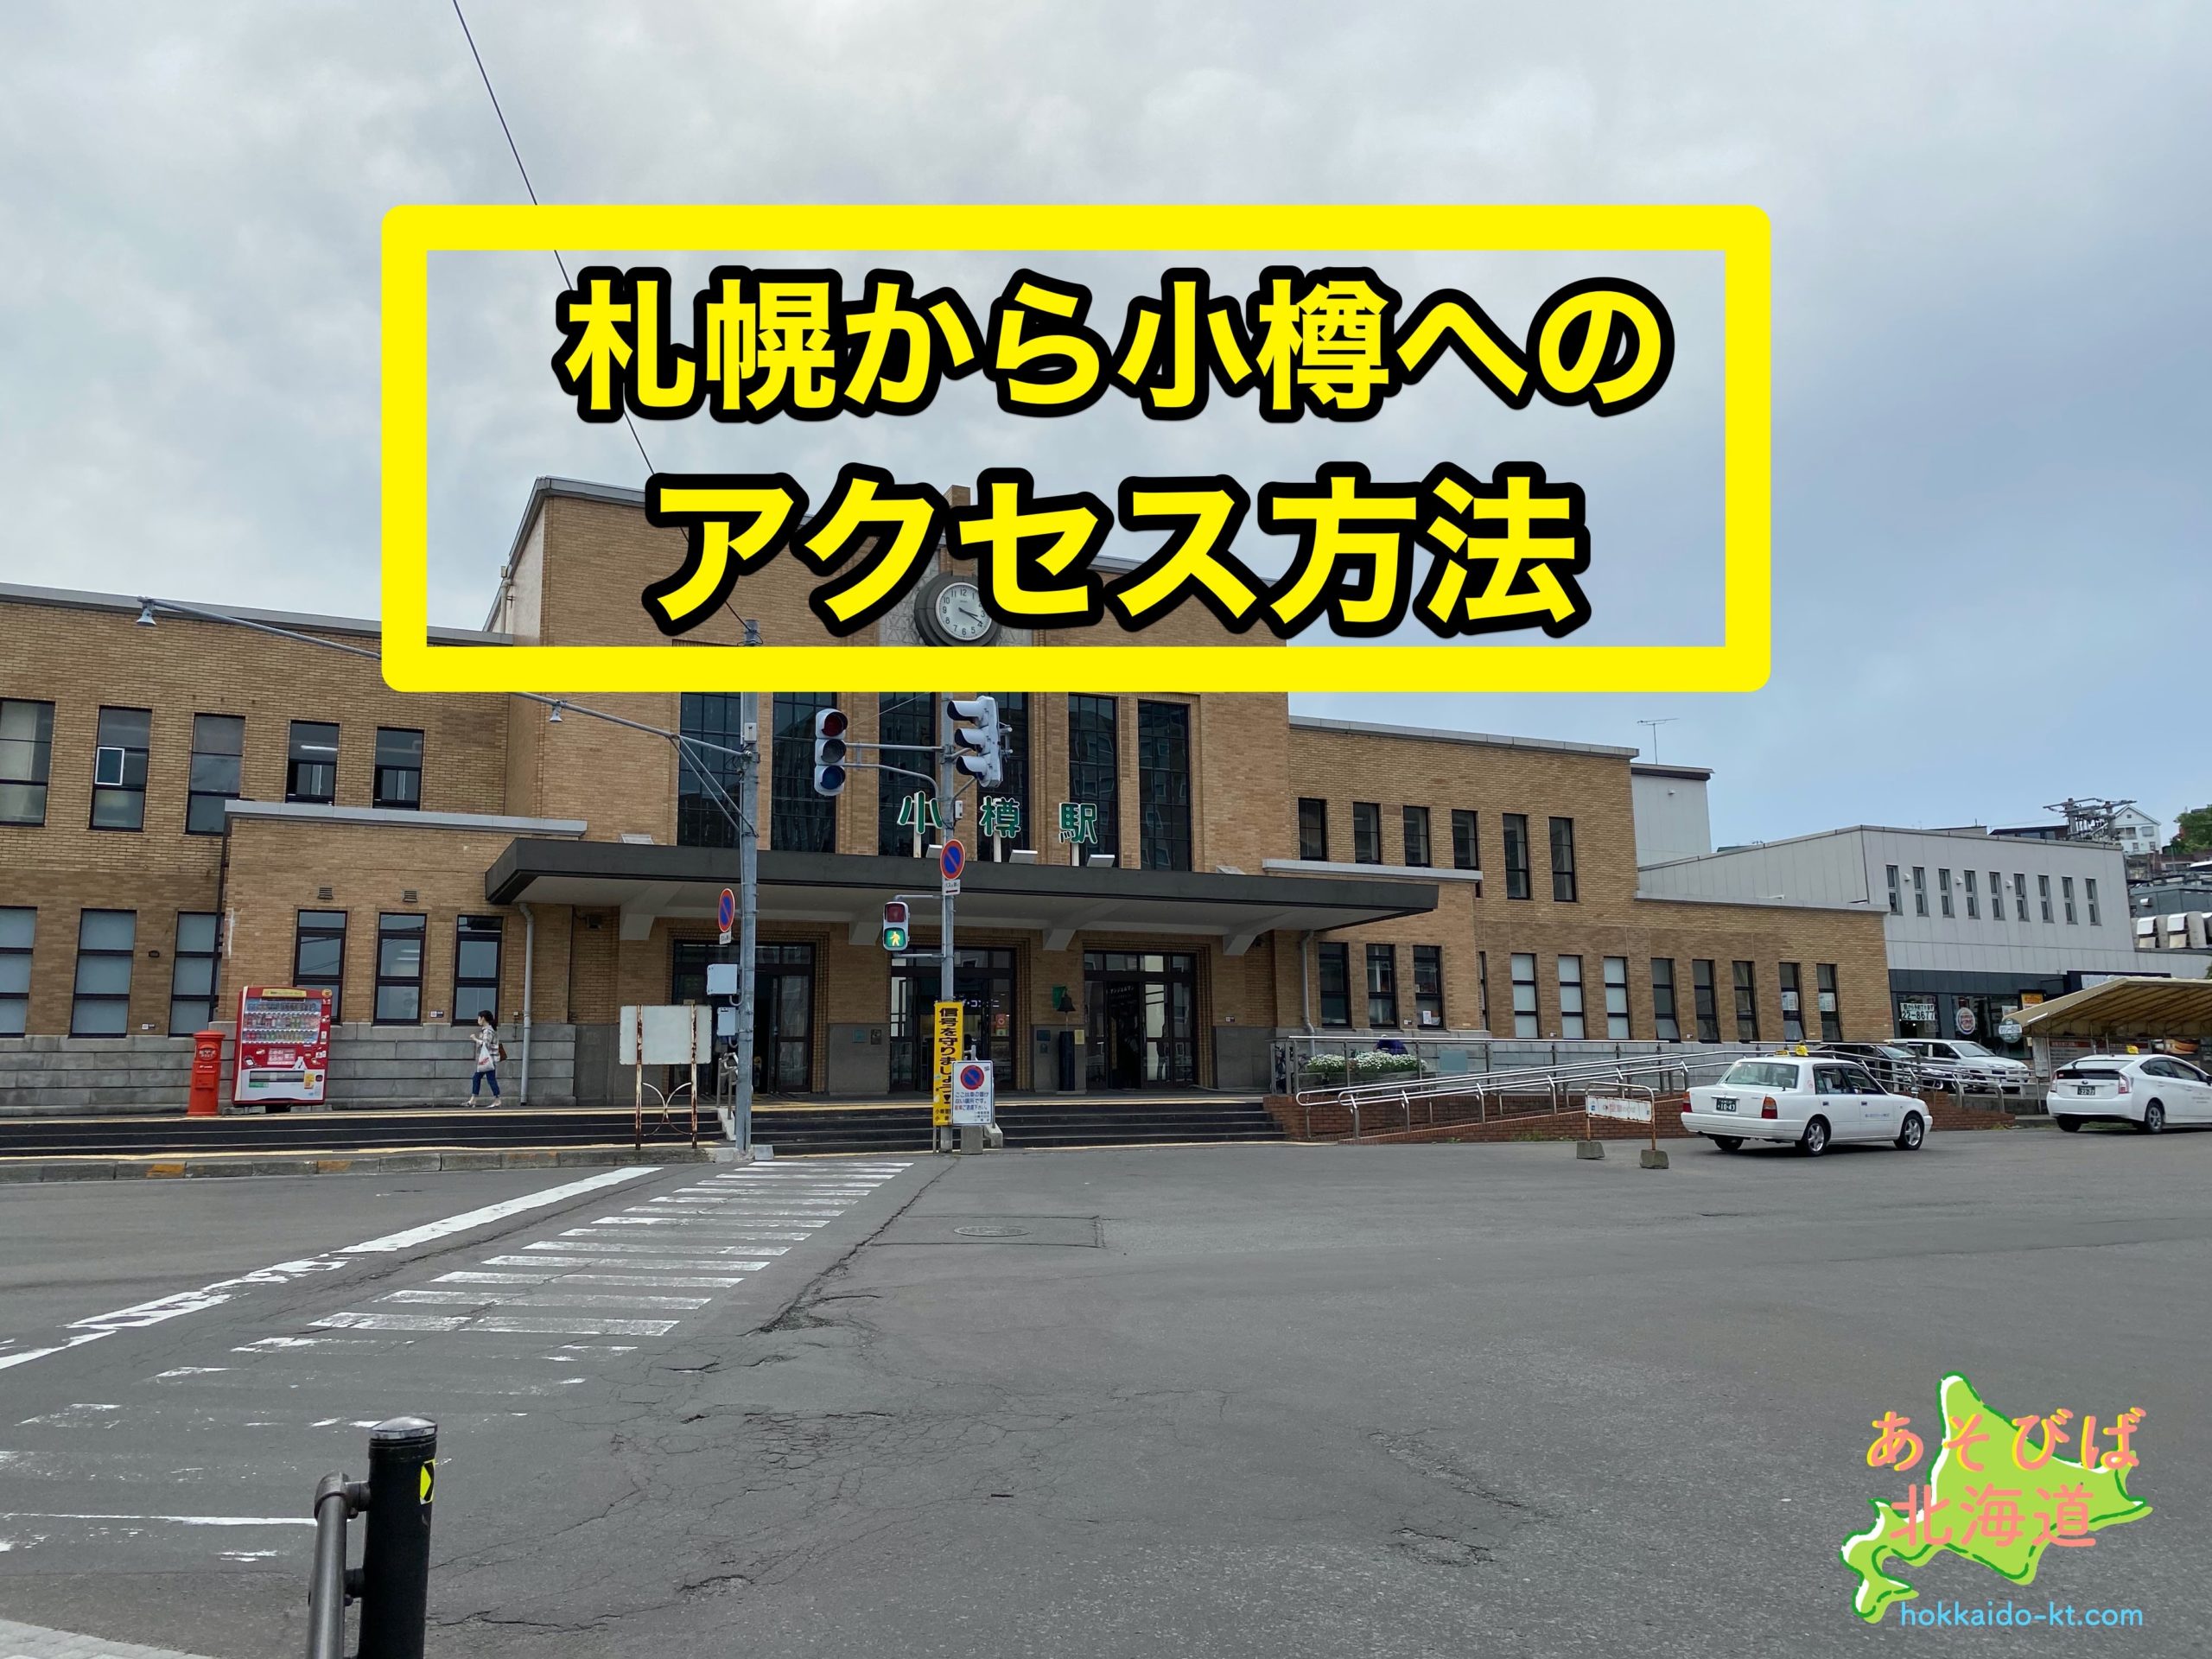 札幌から小樽への行き方 Jr 電車 やバスの時間や料金 車に高速料金や距離は あそびば北海道